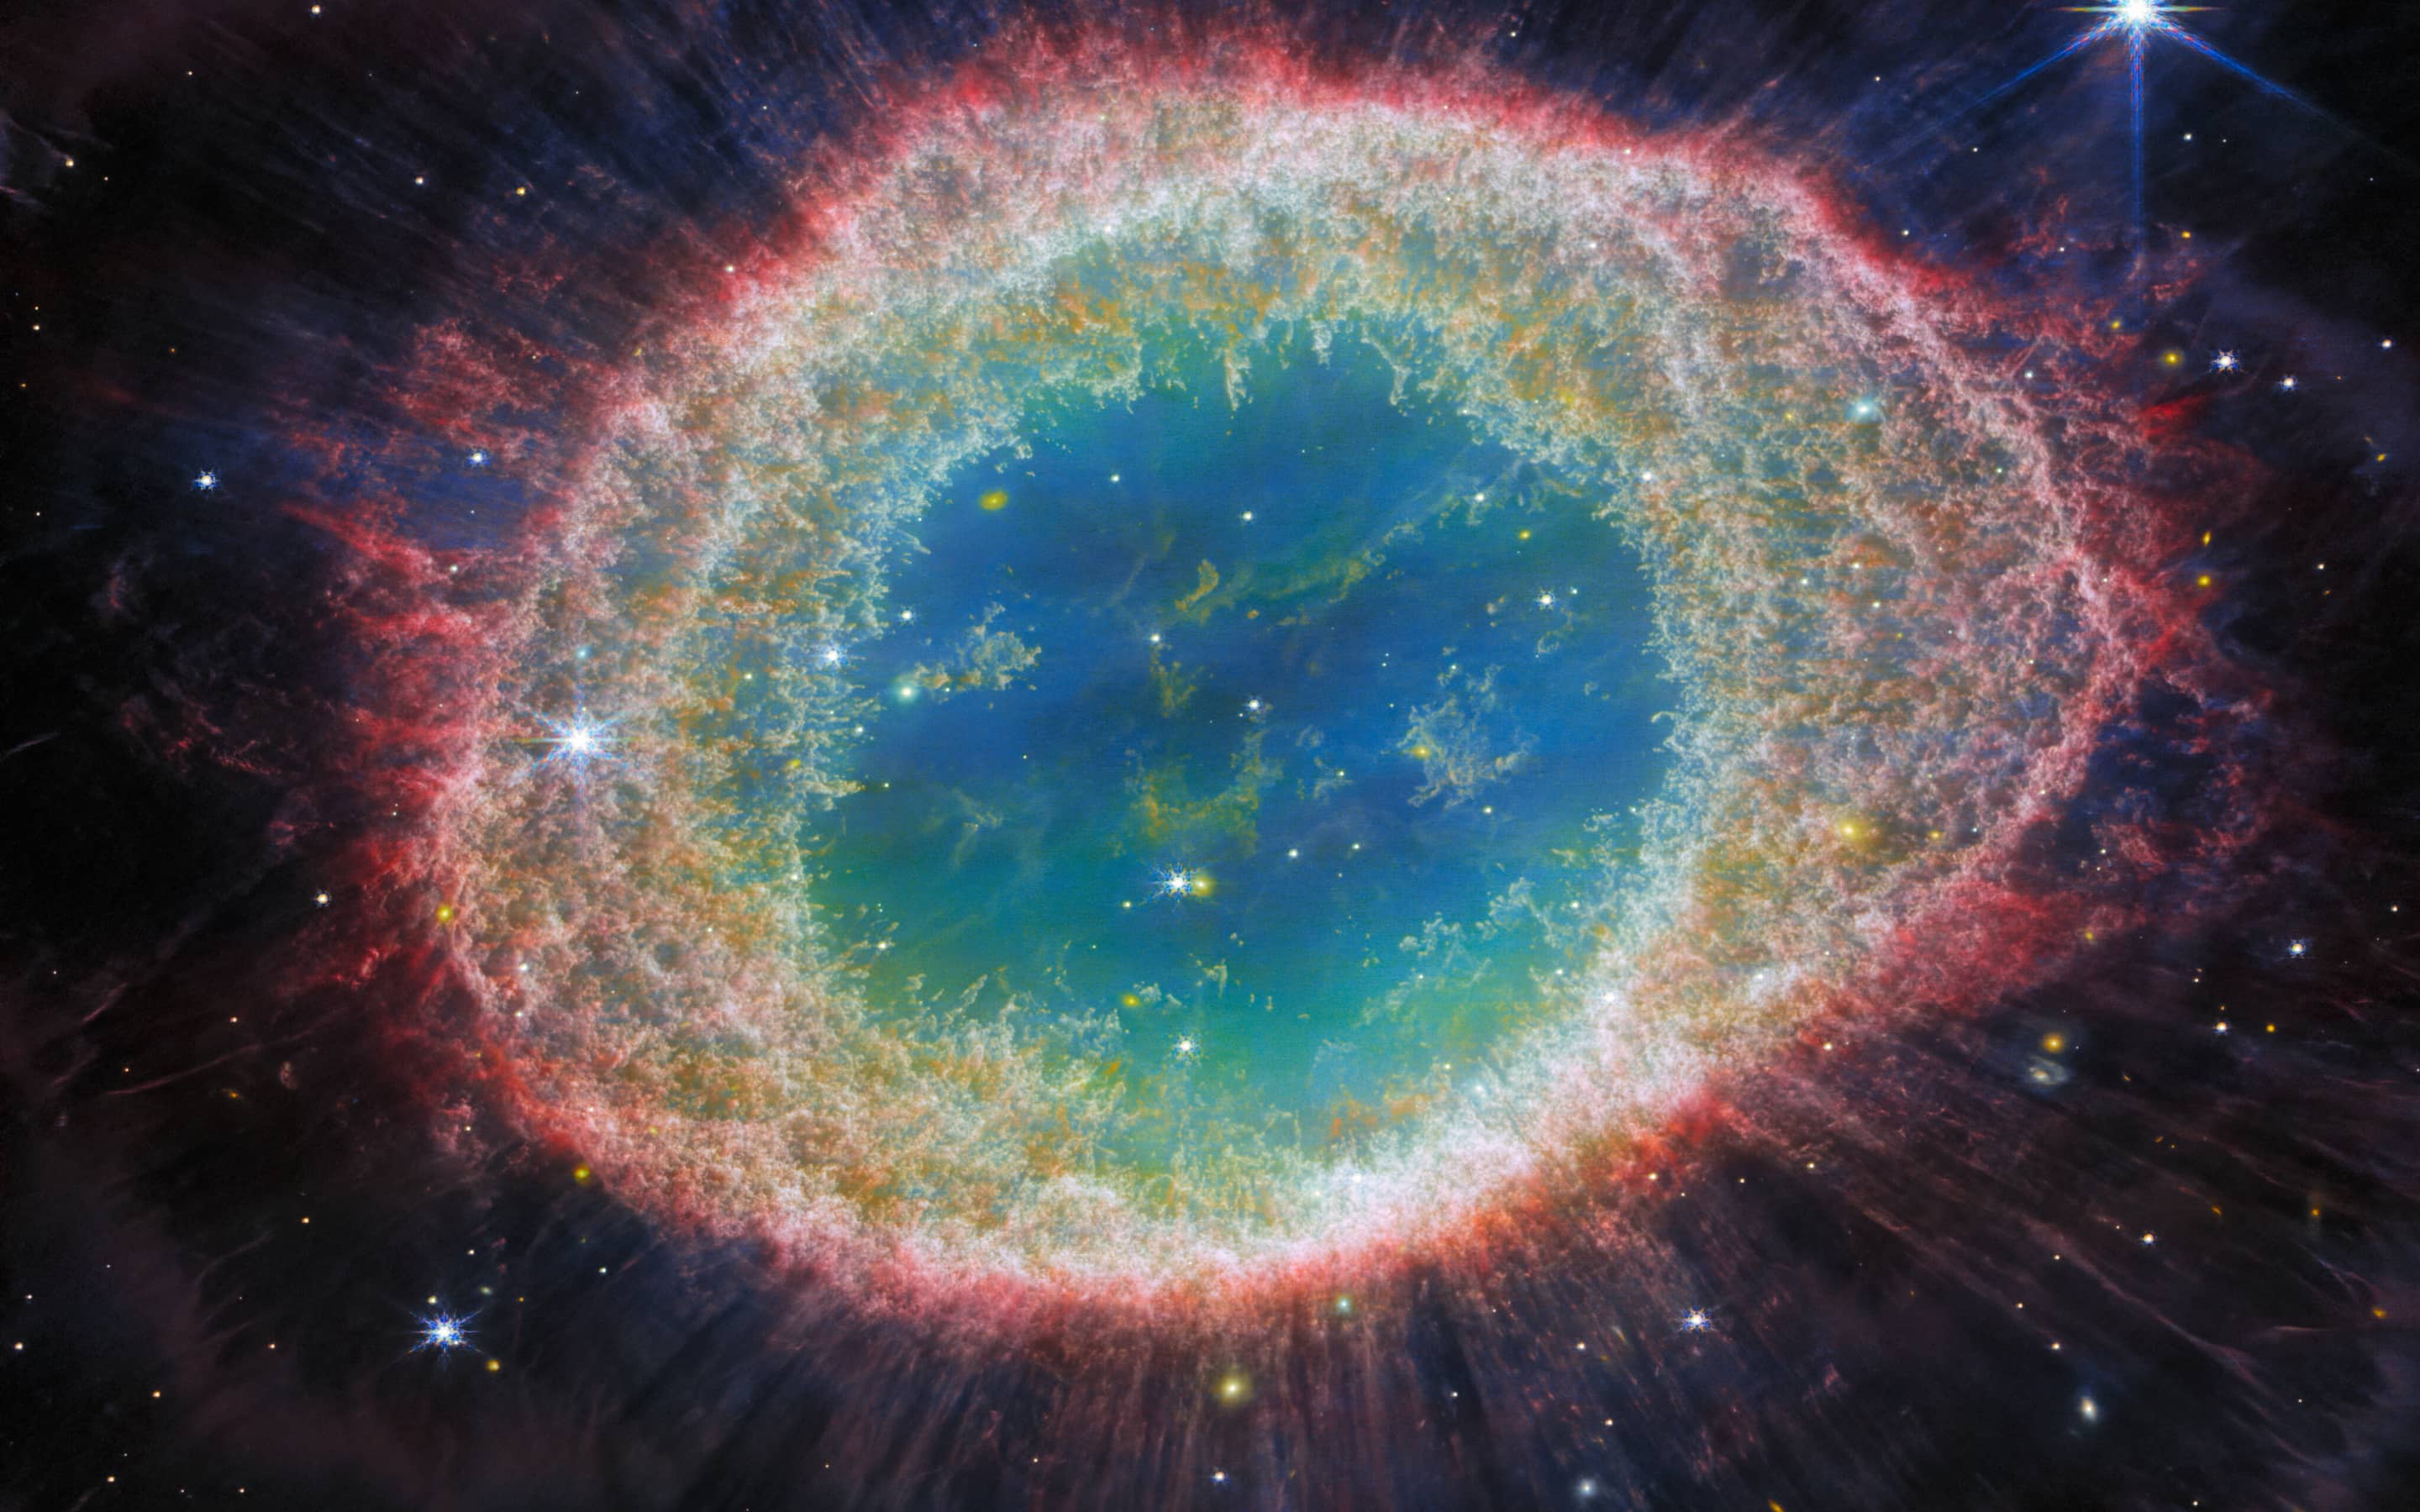 Wie ein kosmisches Auge: Diese im August 2023 von der ESA veröffentlichte Aufnahme des James-Webb-Teleskops zeigt den rund 2500 Lichtjahre entfernten Ringnebel im Sternbild Leier. Er ist der Überrest eines Sterns, der seine äußere Gashülle abgestoßen hat. Im Zentrum befindet sich ein Weißer Zwergstern.